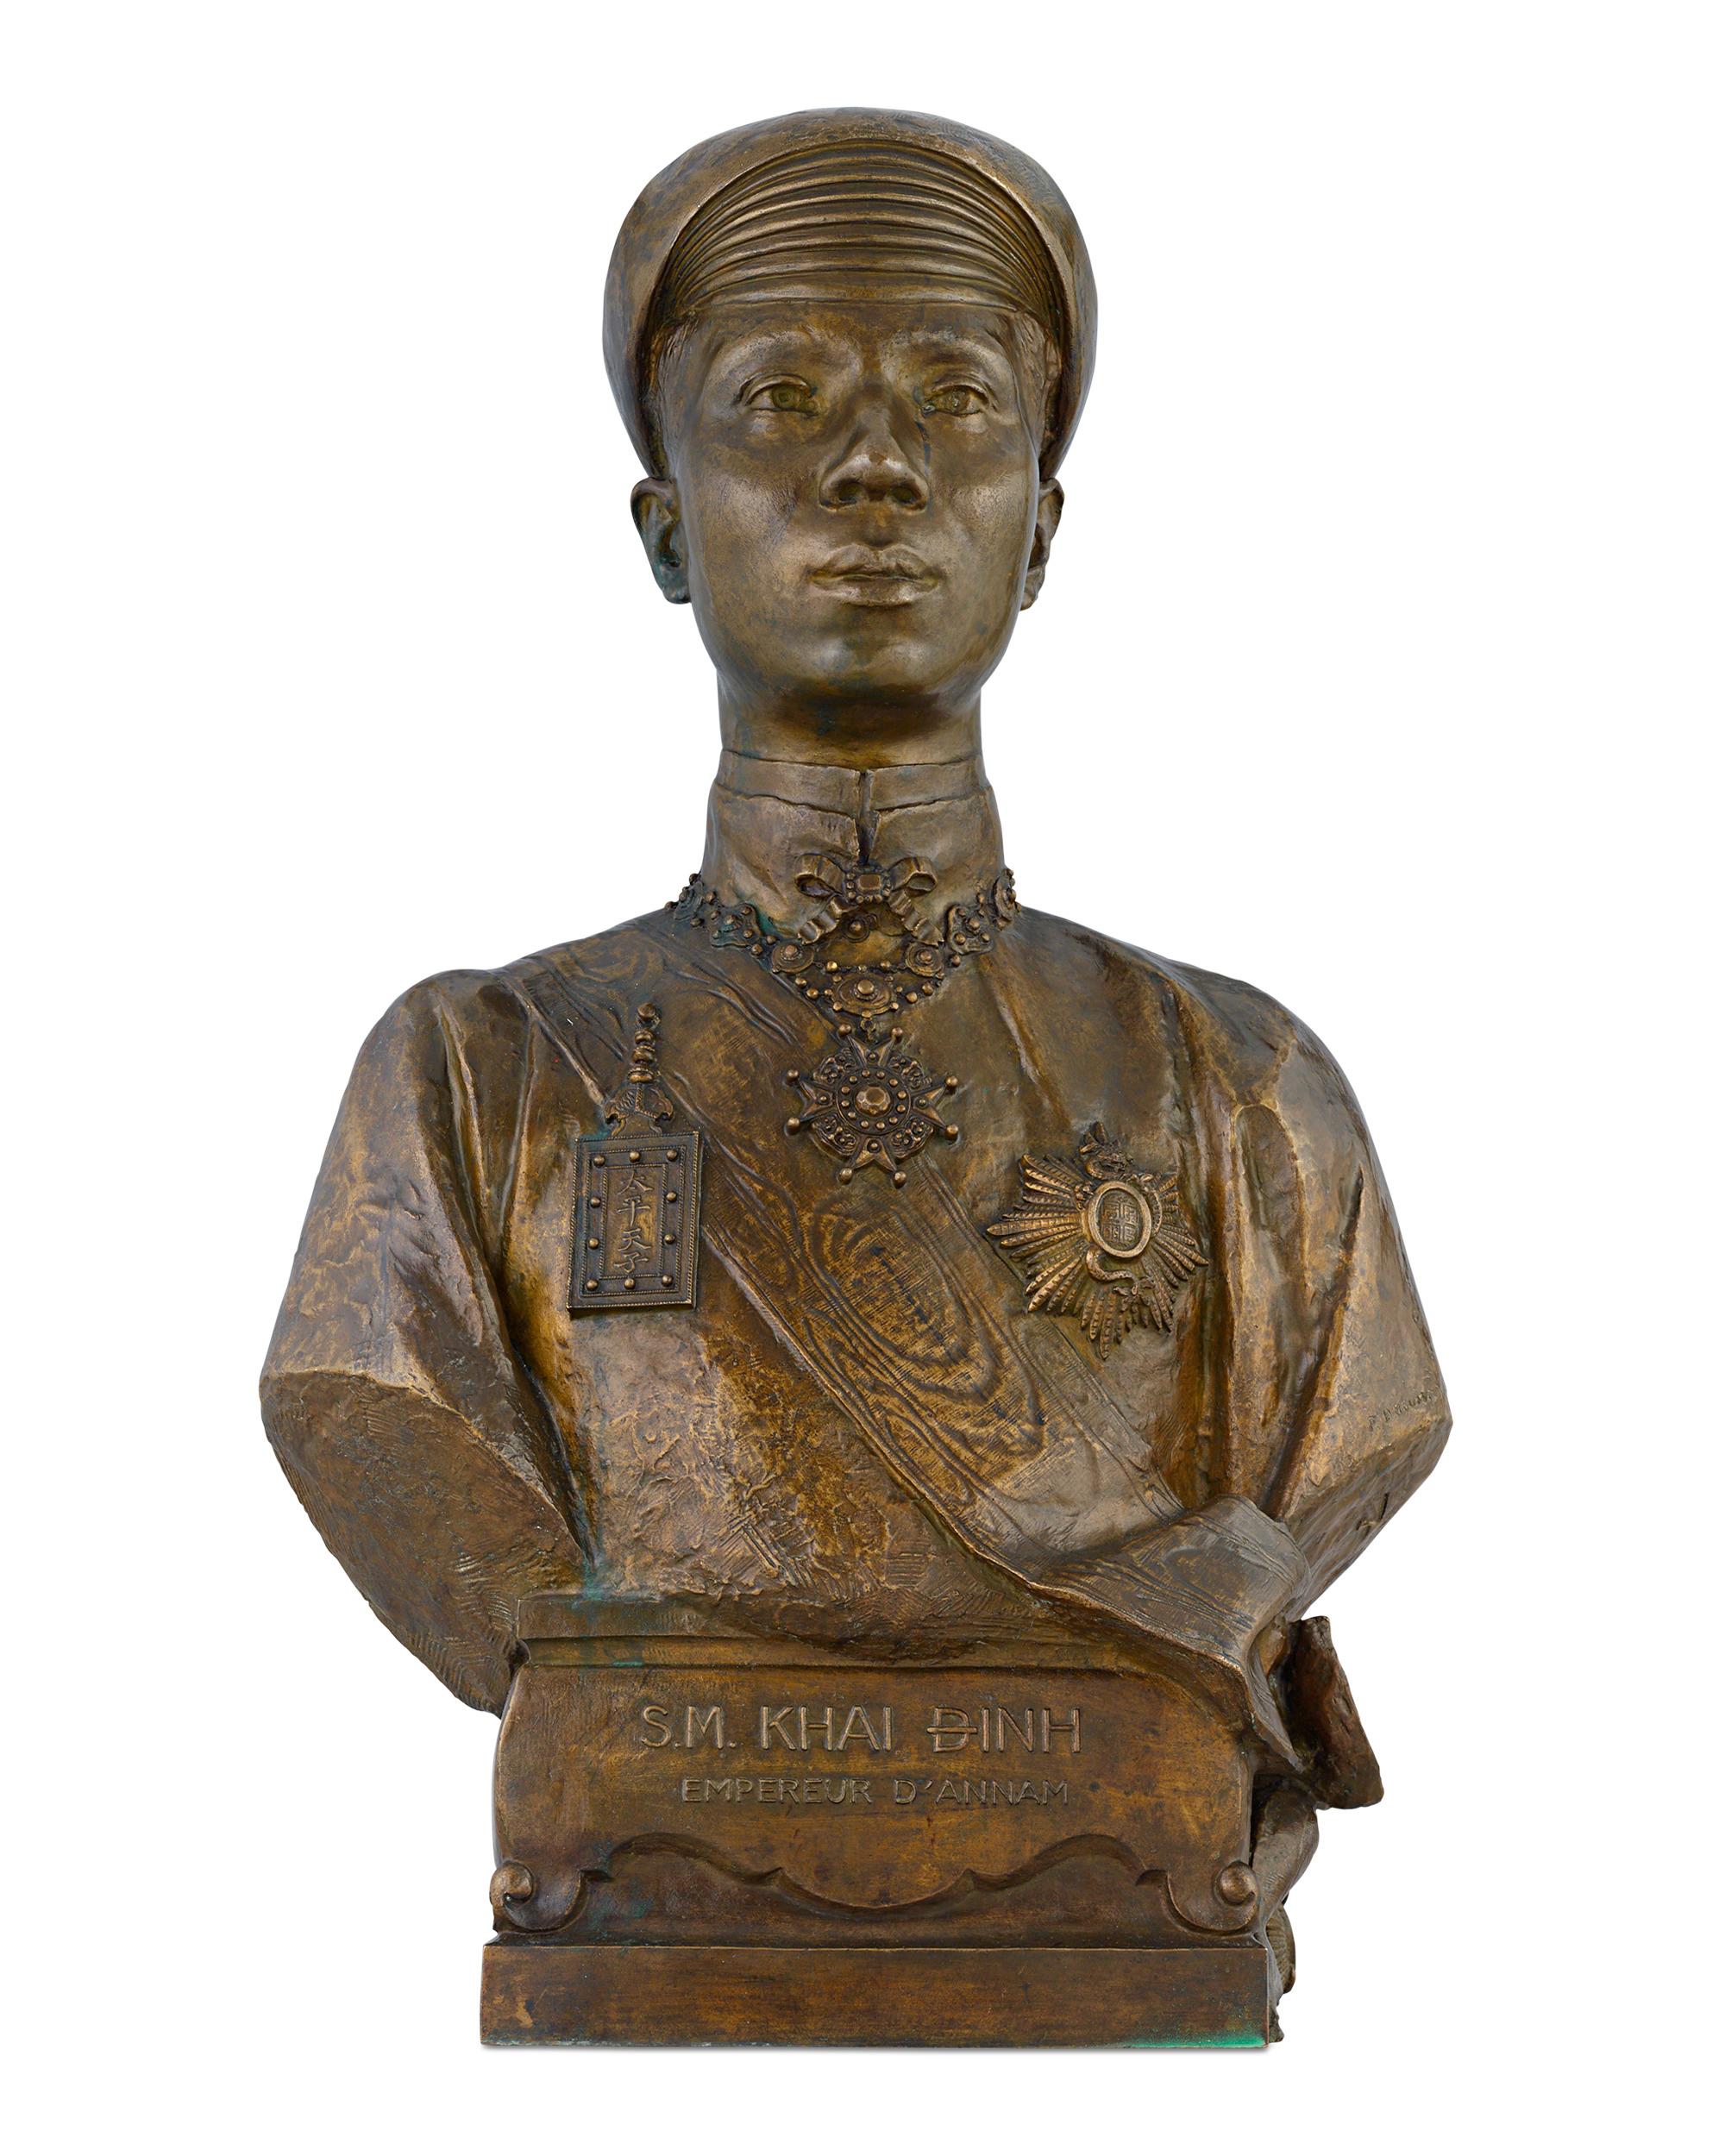 Paul Ducuing Figurative Sculpture - S.M Khai Dinh, Empereur d'Annam (S.M. Khai Dinh, Emperor of Annam) 